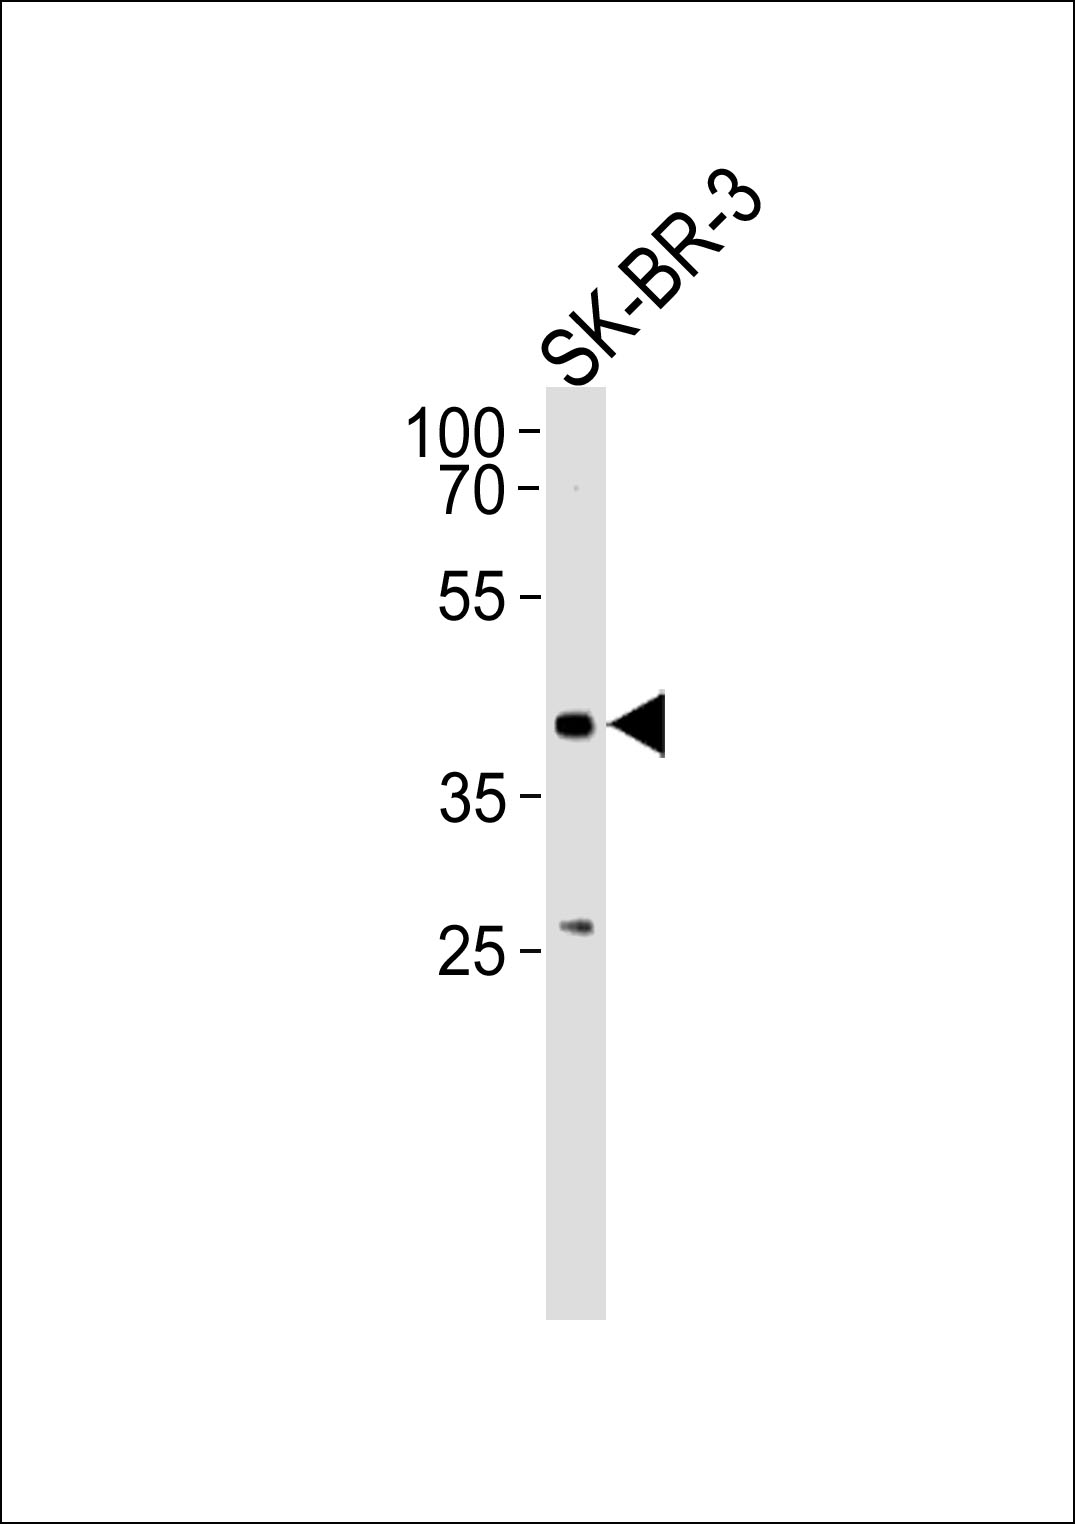 ELK3 Antibody (N-term) (OAAB11891) in SK-BR-3 using Western Blot